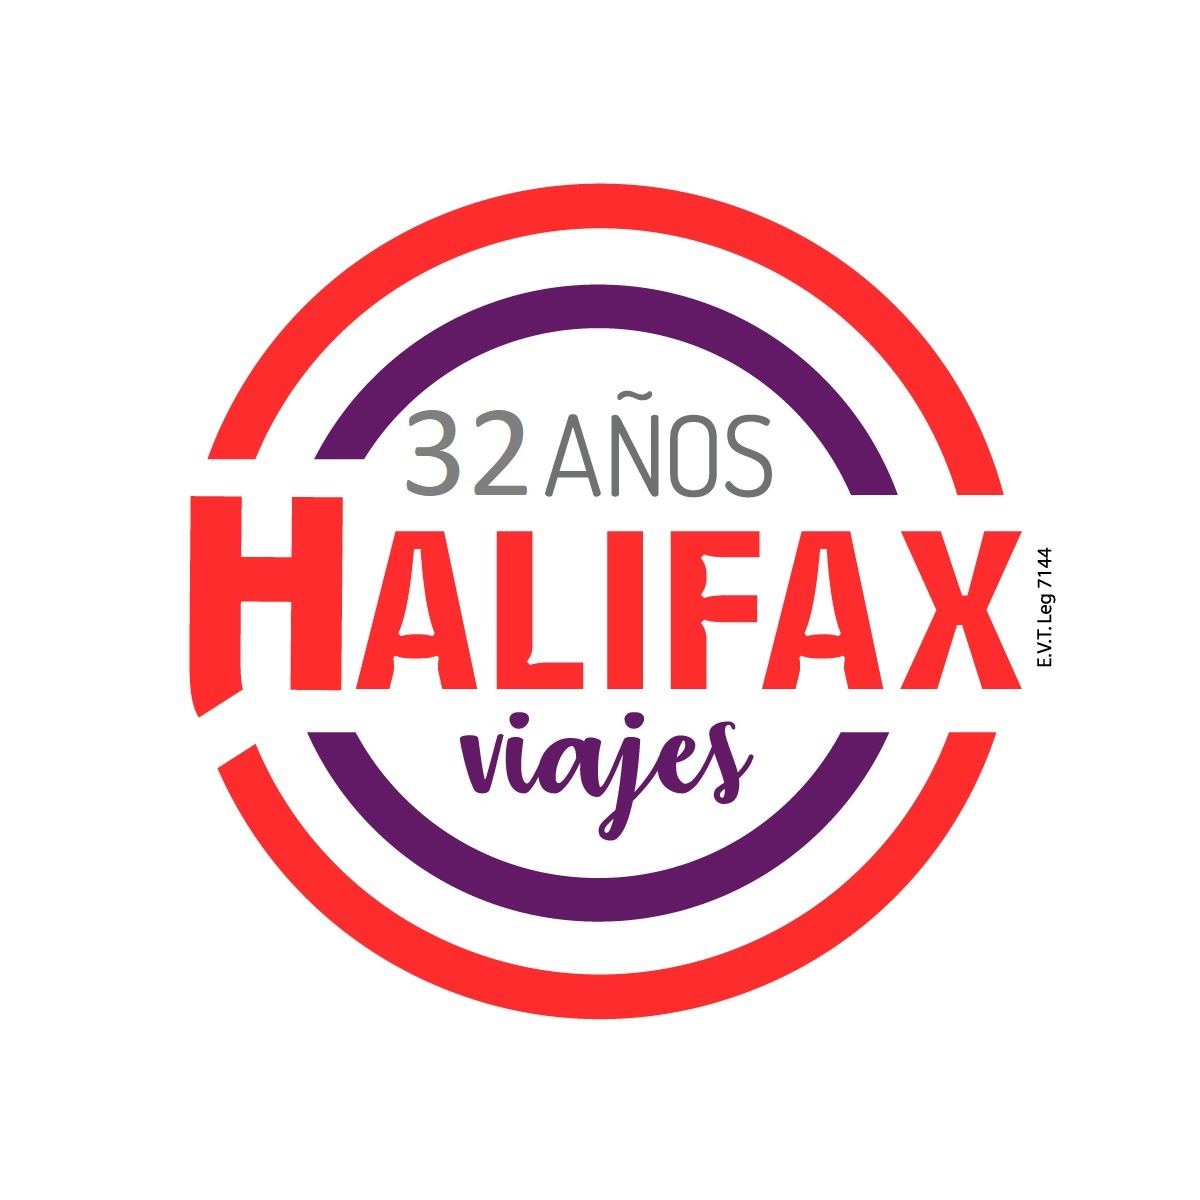 Halifax Viajes